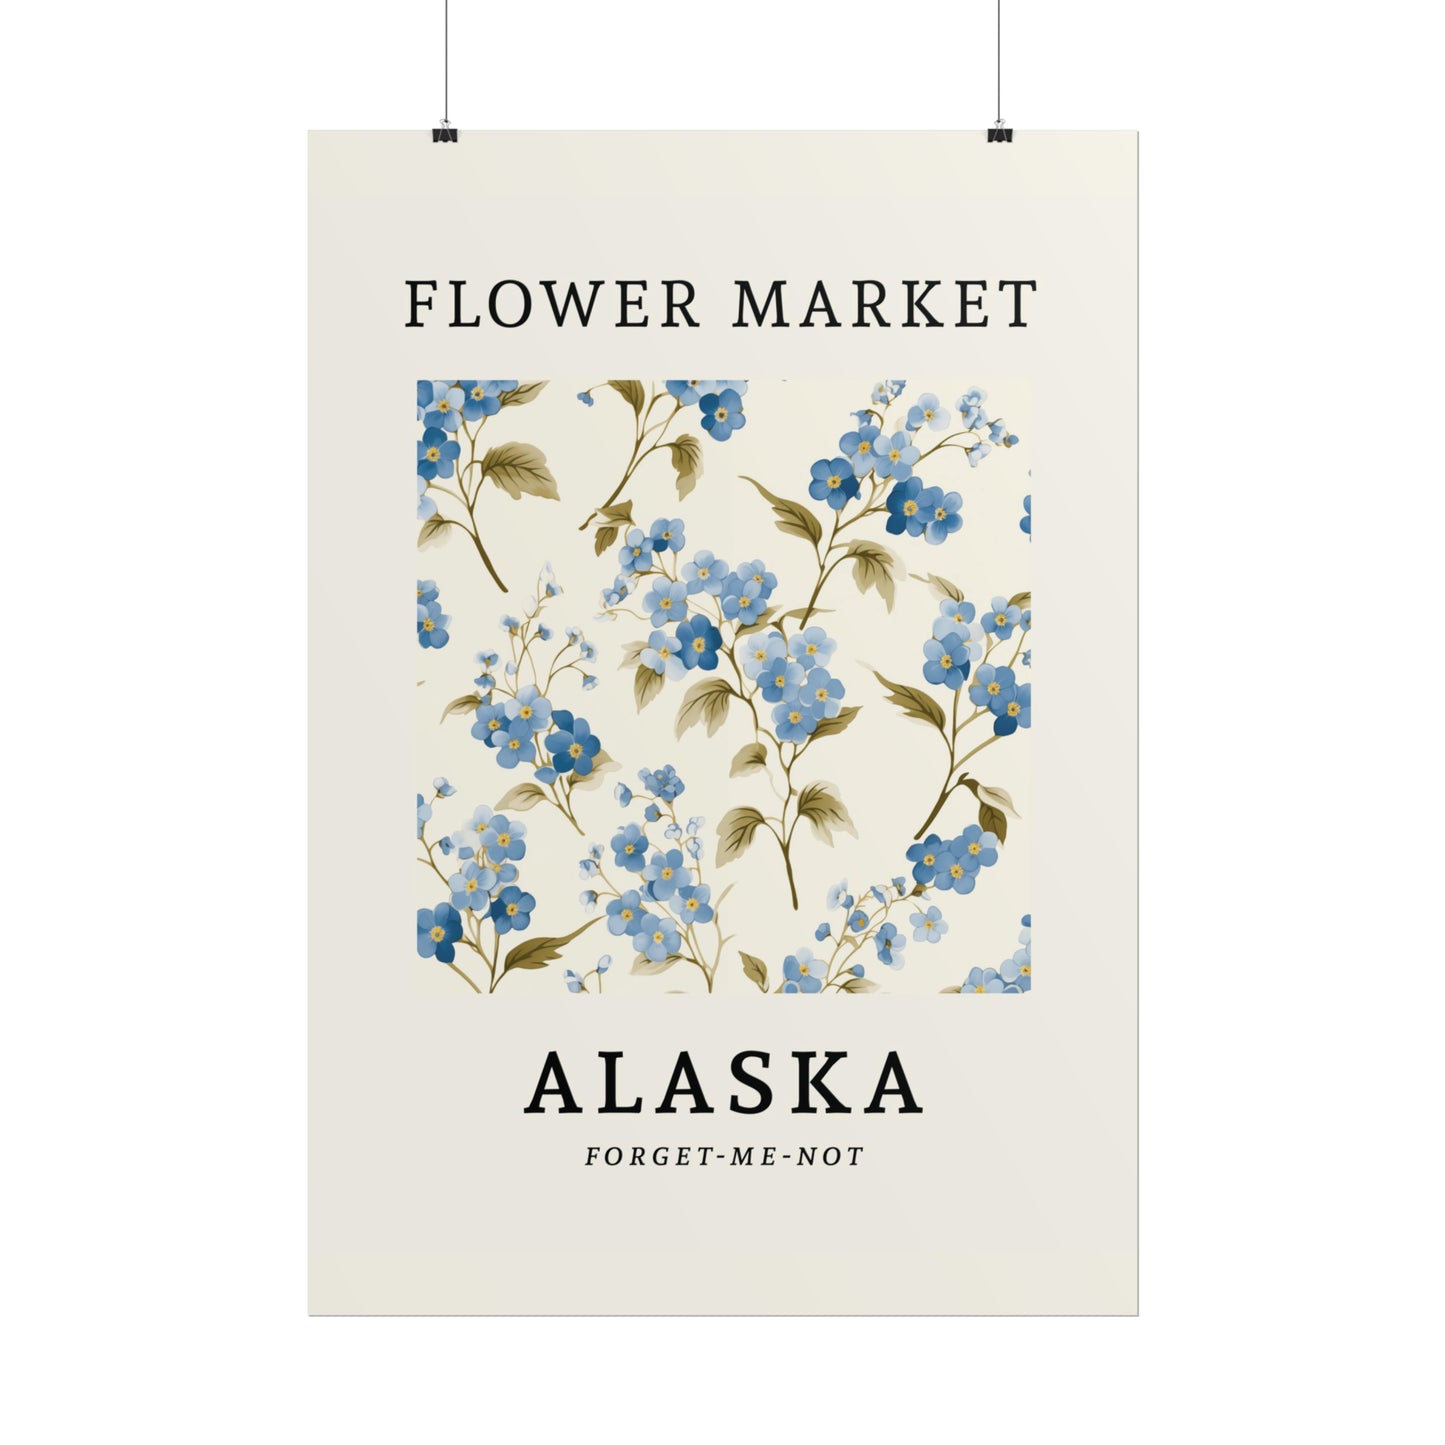 ALASKA FLOWER MARKET Poster Forget-me-not Flower Blooms